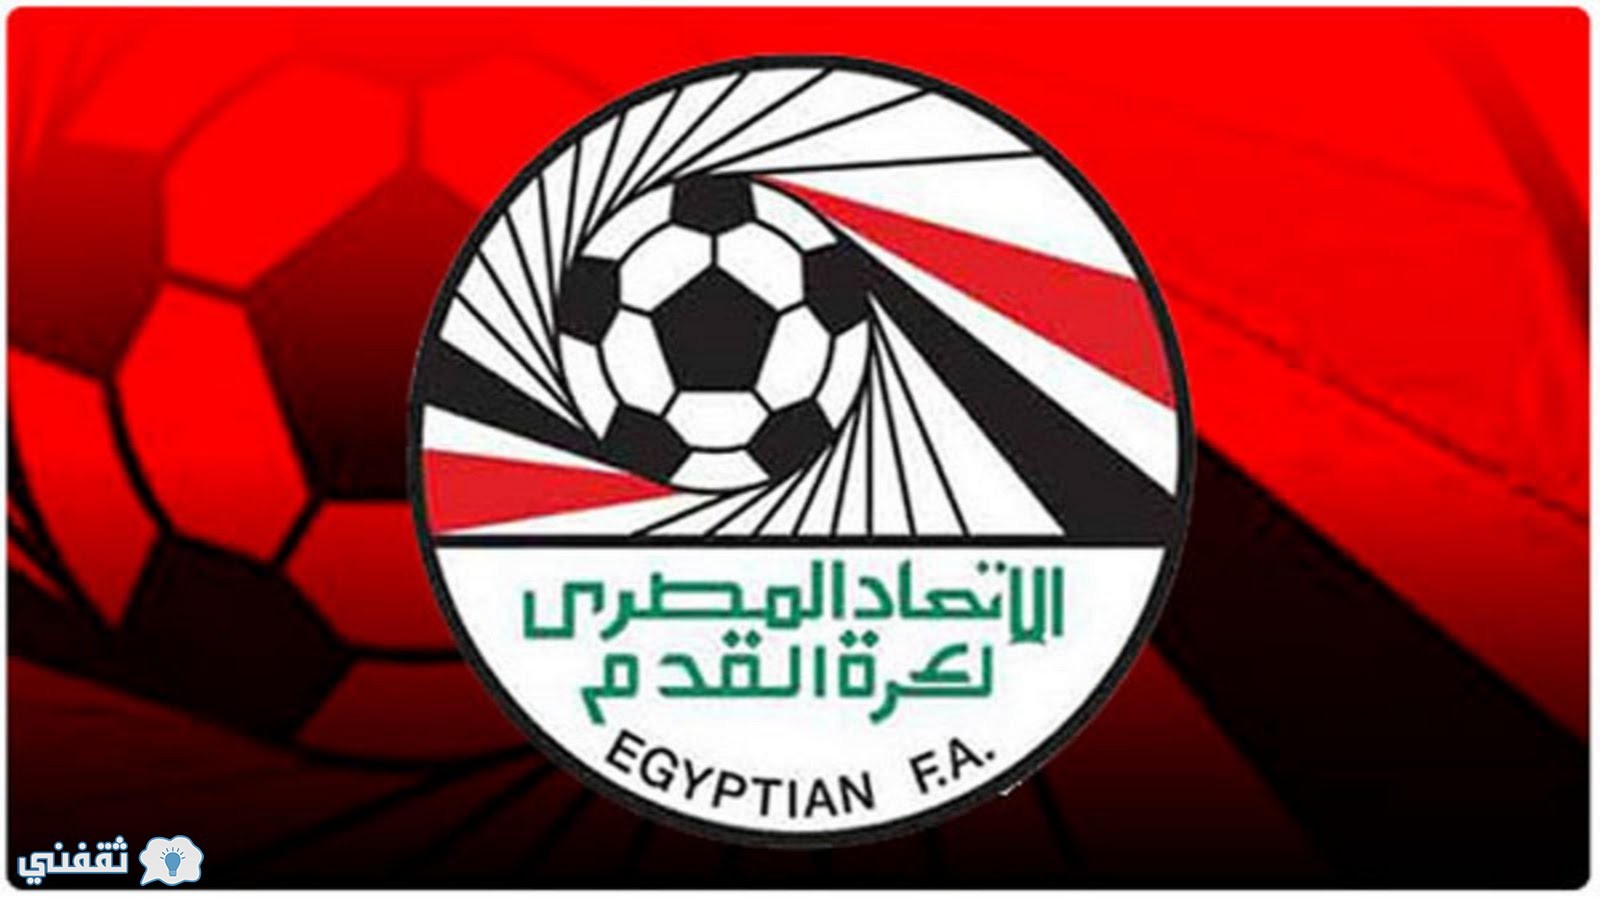 نتيجة قرعة الدوري المصري الممتاز موسم 2016/2017 و جدول مباريات الأهلي والزمالك